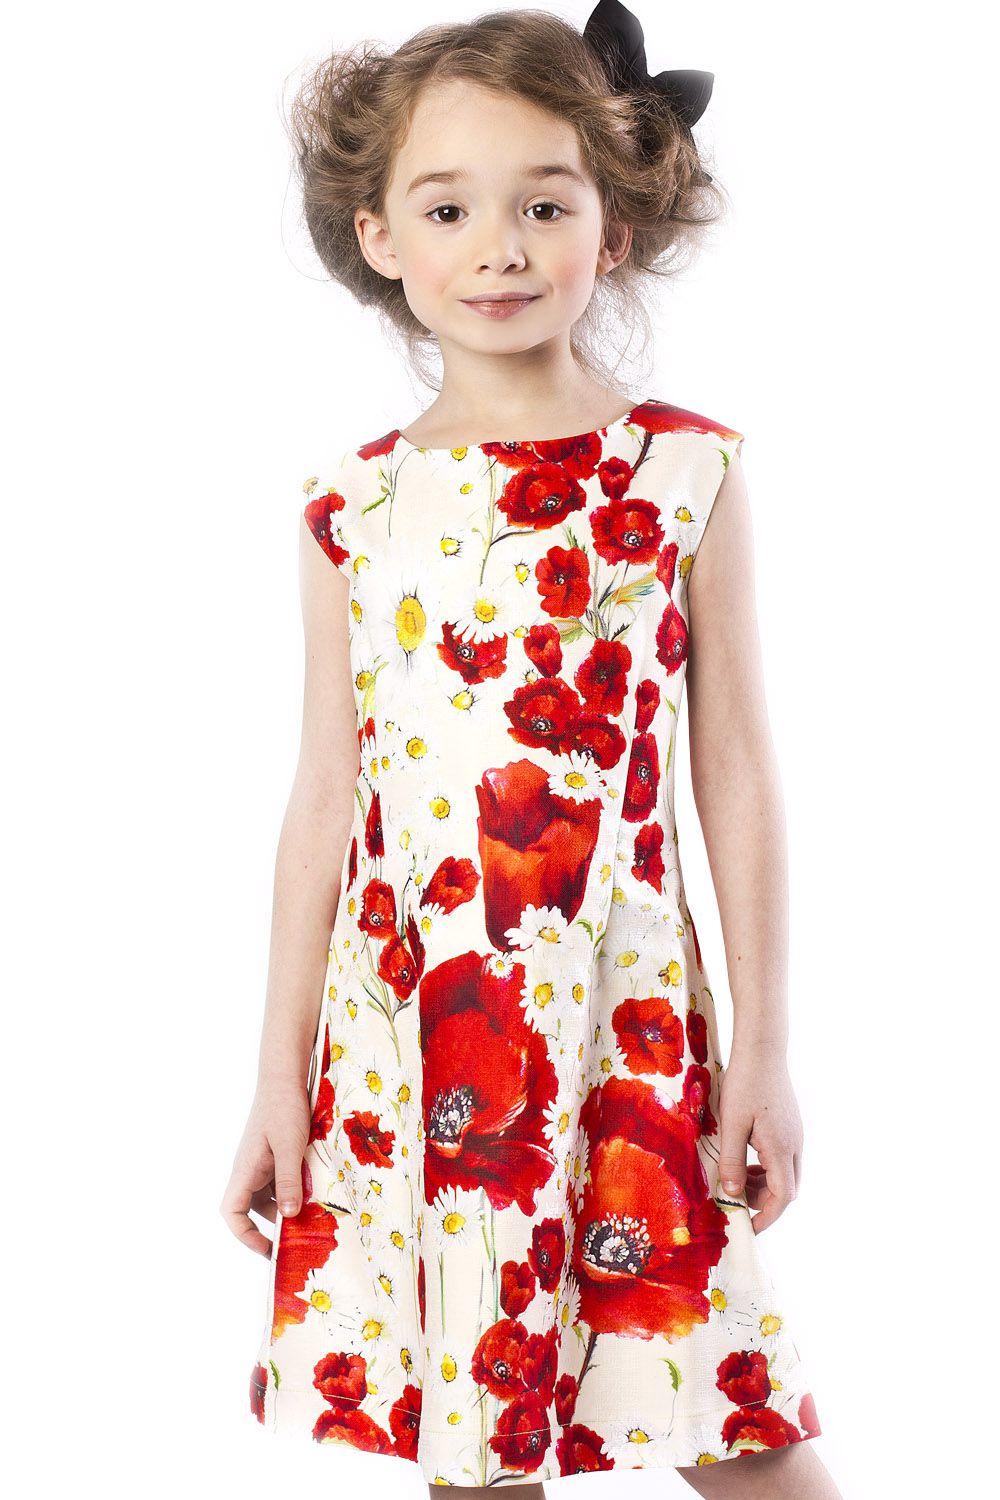 Платье "Маки" для девочки 29526-432K разноцветный Noble People "Маки", Российская Федерация